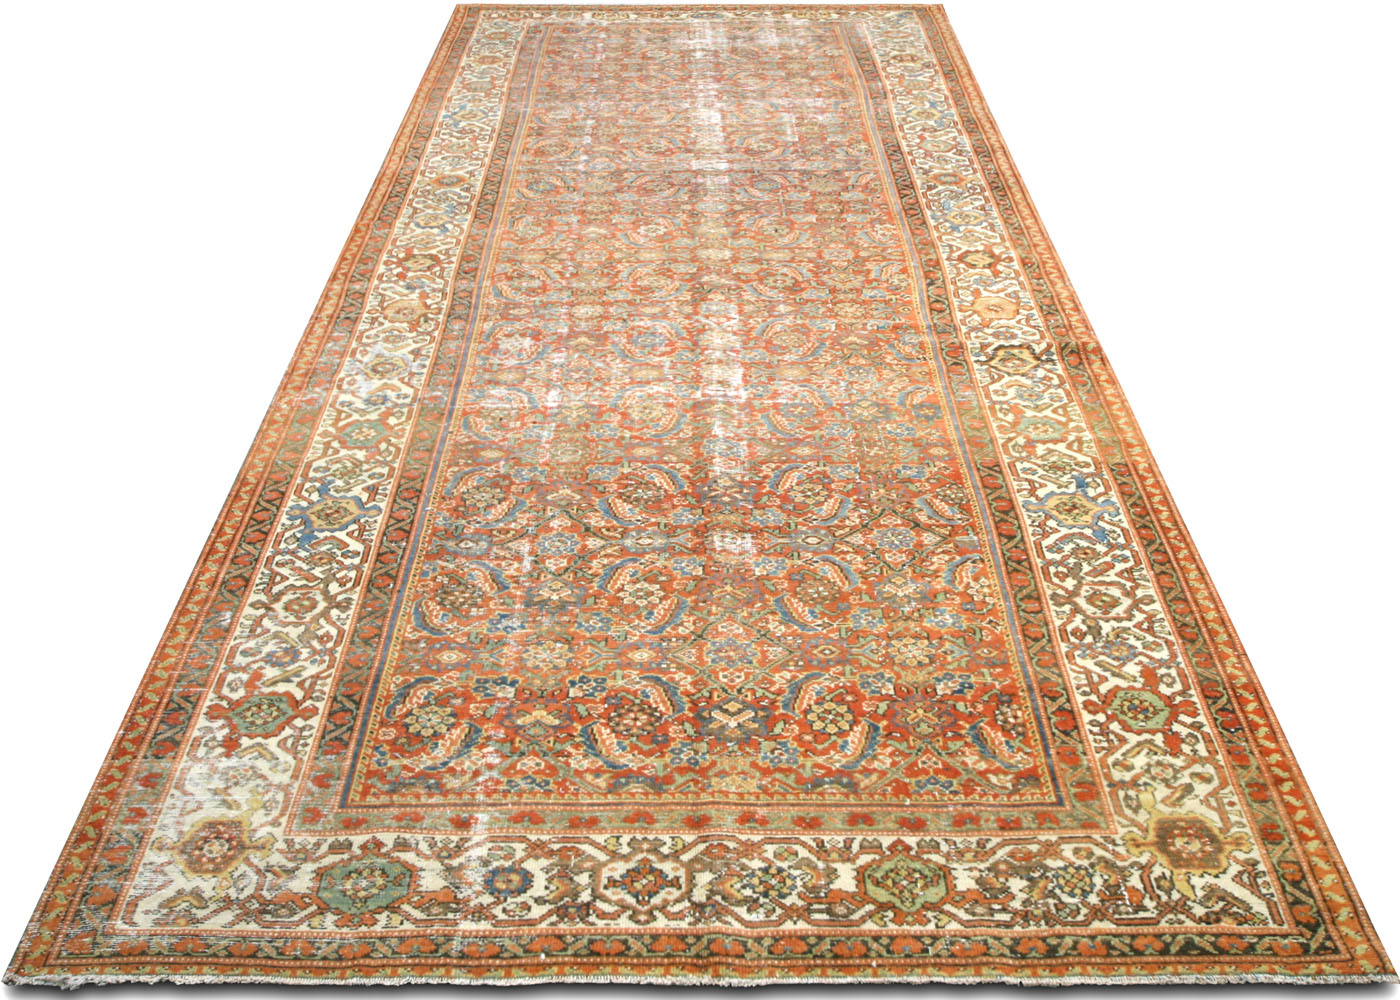 Antique Persian Mahal Rug - 6'6" x 16'5"